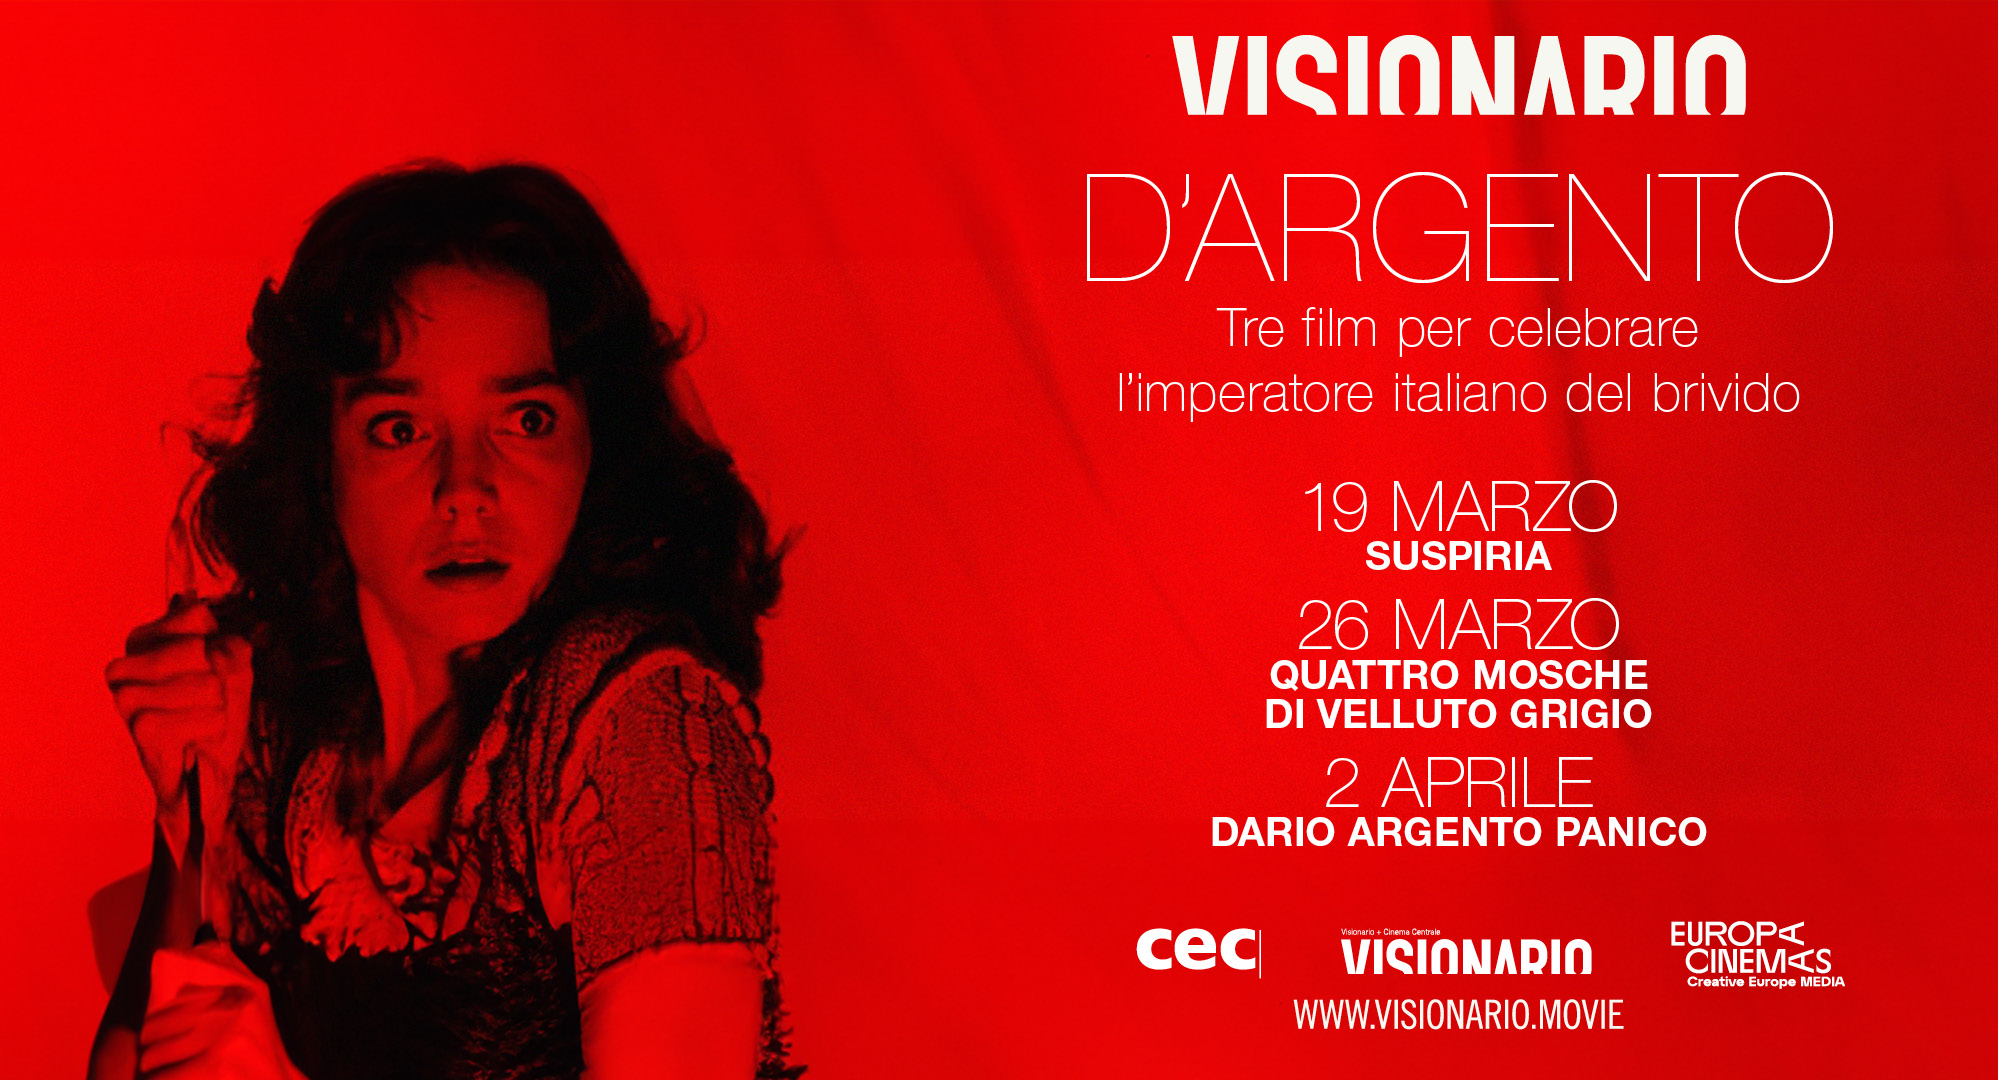 Al momento stai visualizzando D’ARGENTO -Al Visionario tre film per celebrare l’imperatore italiano del brivido!